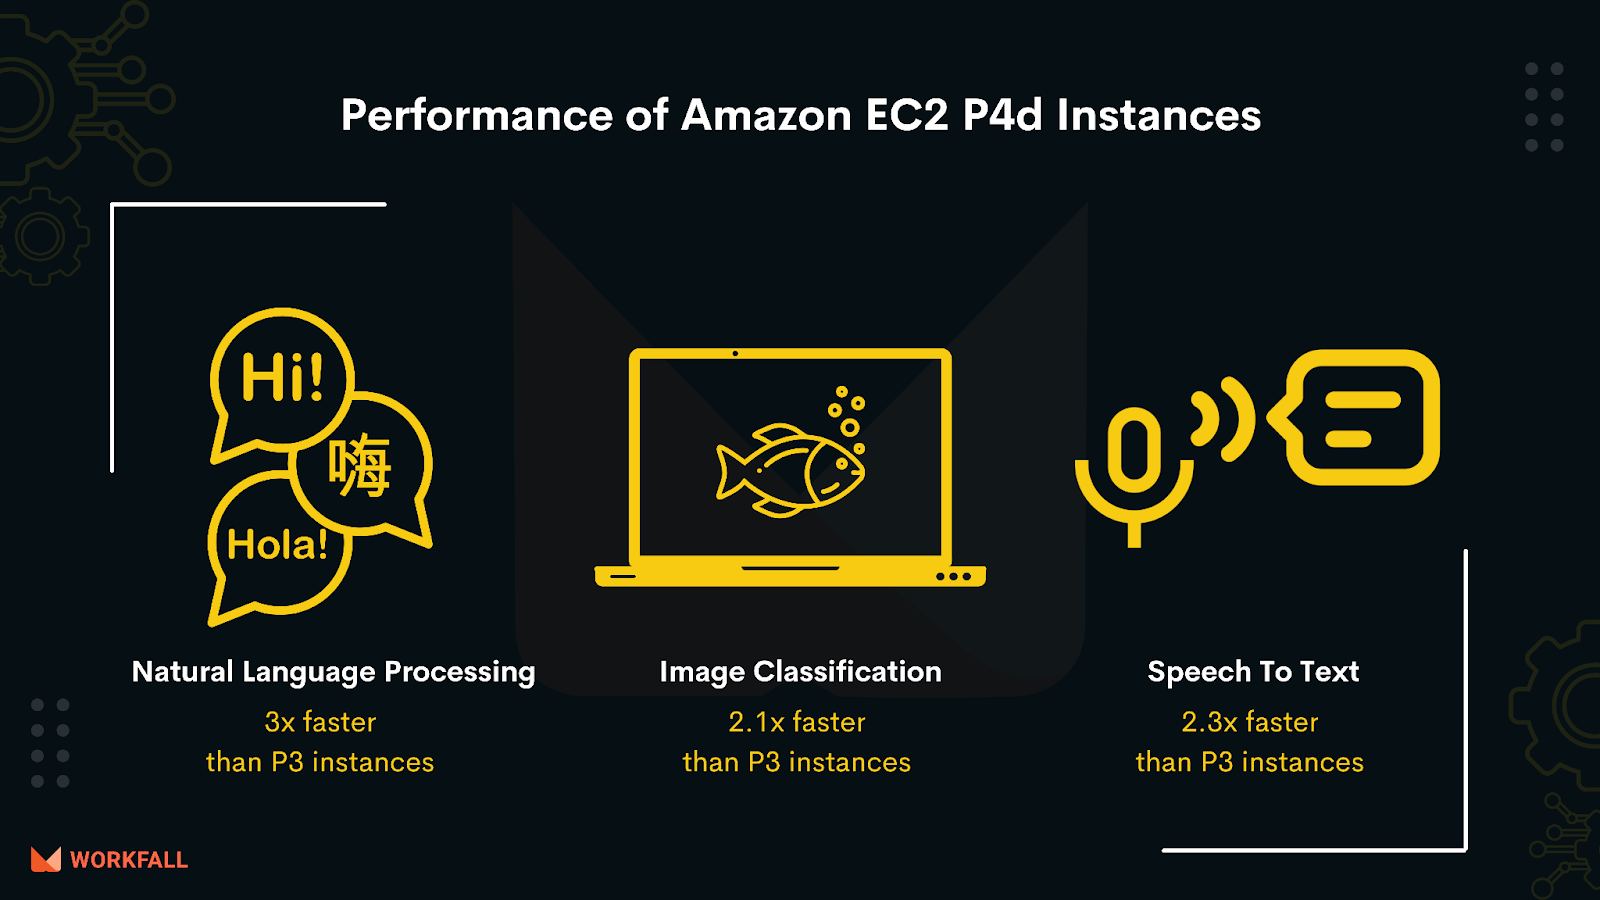 Performance of Amazon EC2 P4d instances